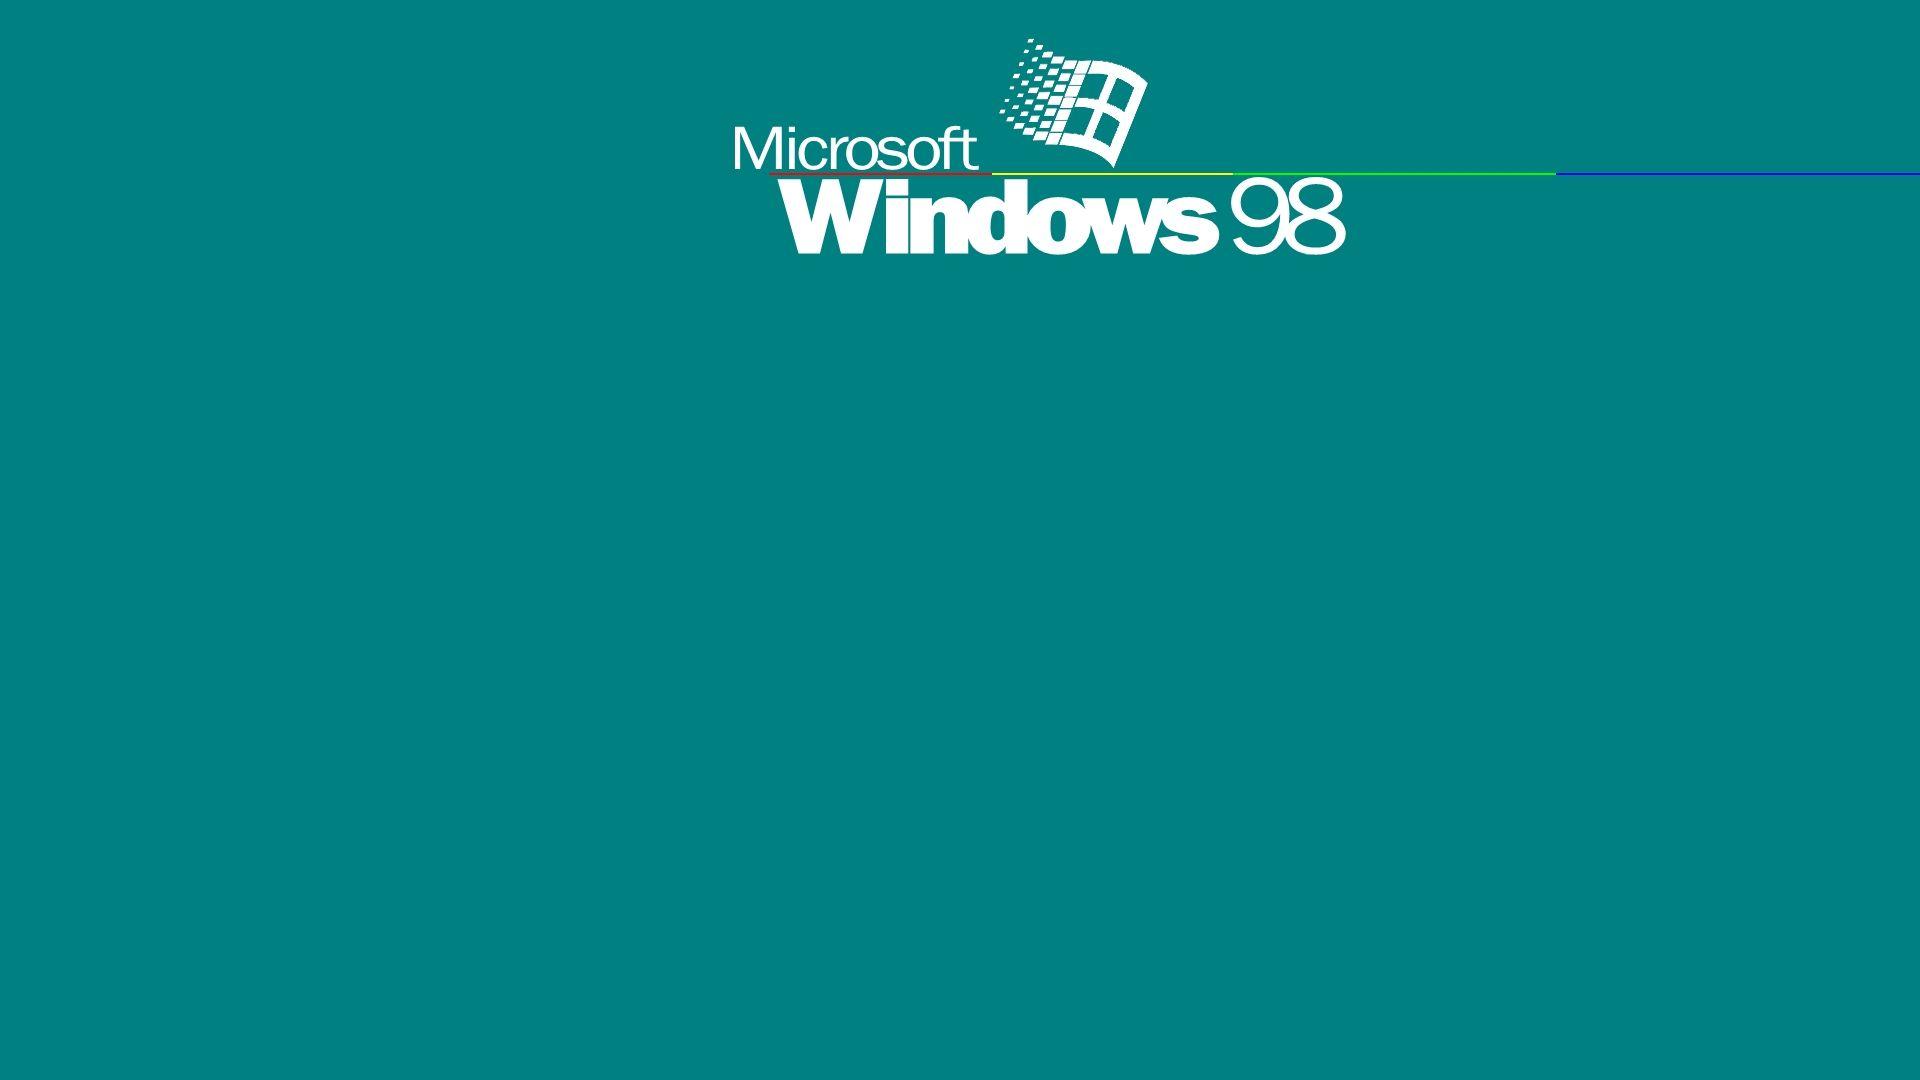 Với chủ đề Windows 98, Wallpapers Cave đã tạo ra những bức hình nền cực kì sáng tạo và độc đáo. Hãy giúp mình tìm kiếm chút kỉ niệm thời kỳ đầu thập niên 2000 với những hình ảnh siêu nhân, kim tự tháp và các đường phố đầy màu sắc trên nền đen của hệ điều hành thời bao cấp.